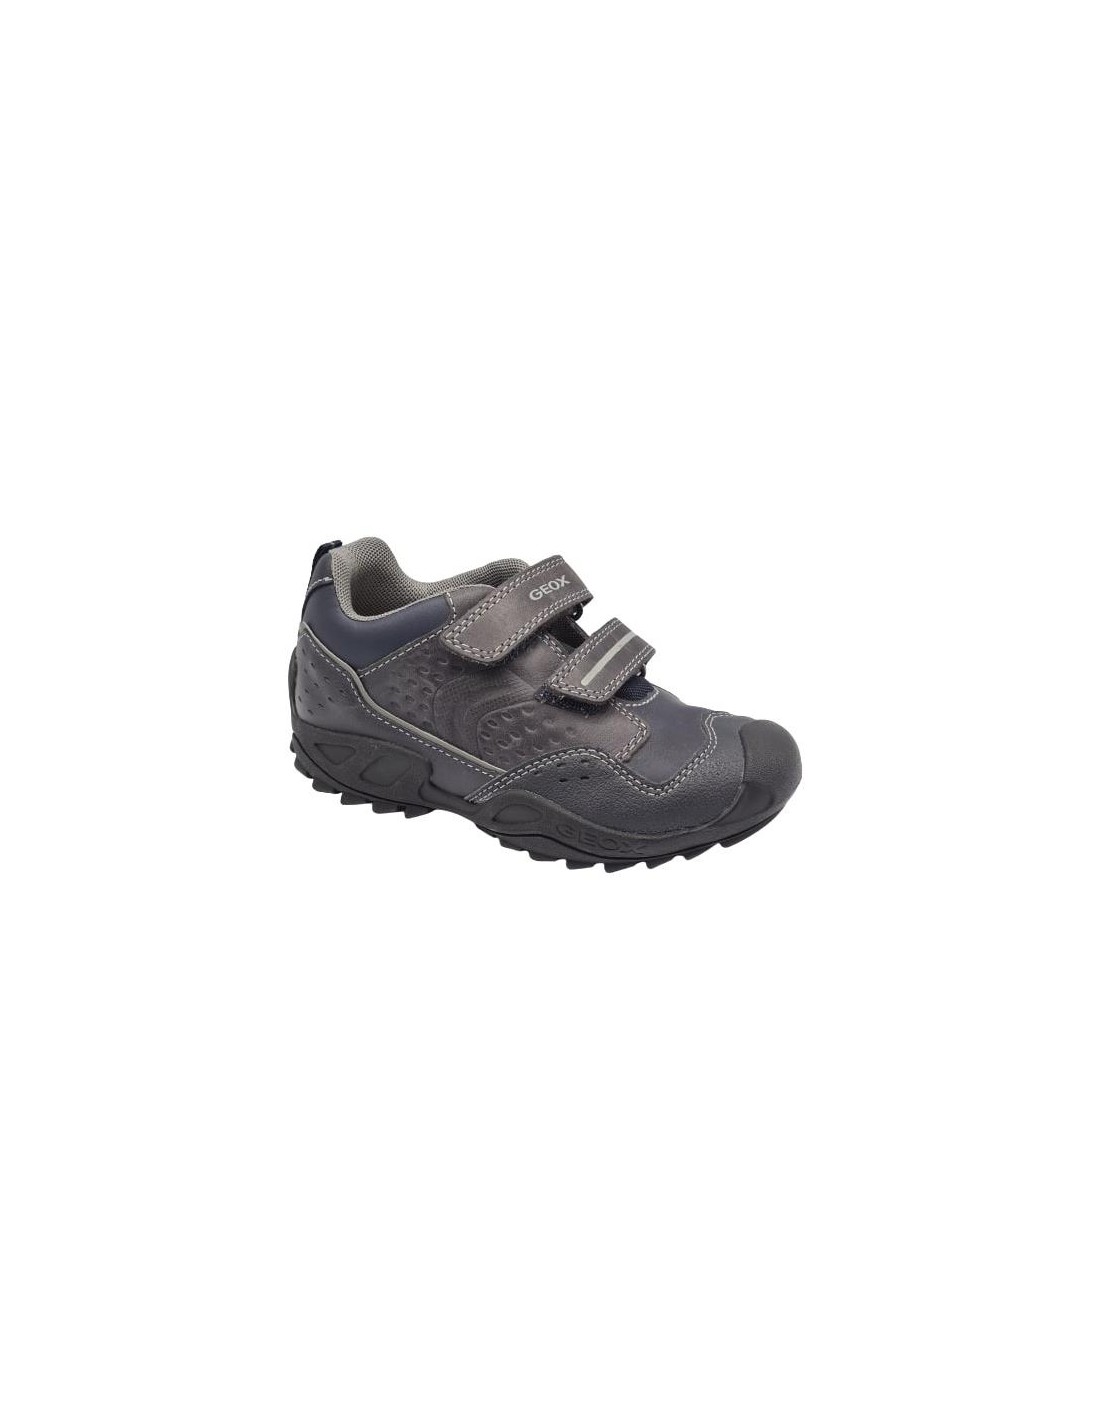 Zapatos con velcro para ninos Geox J641Va 28 Color GRIS